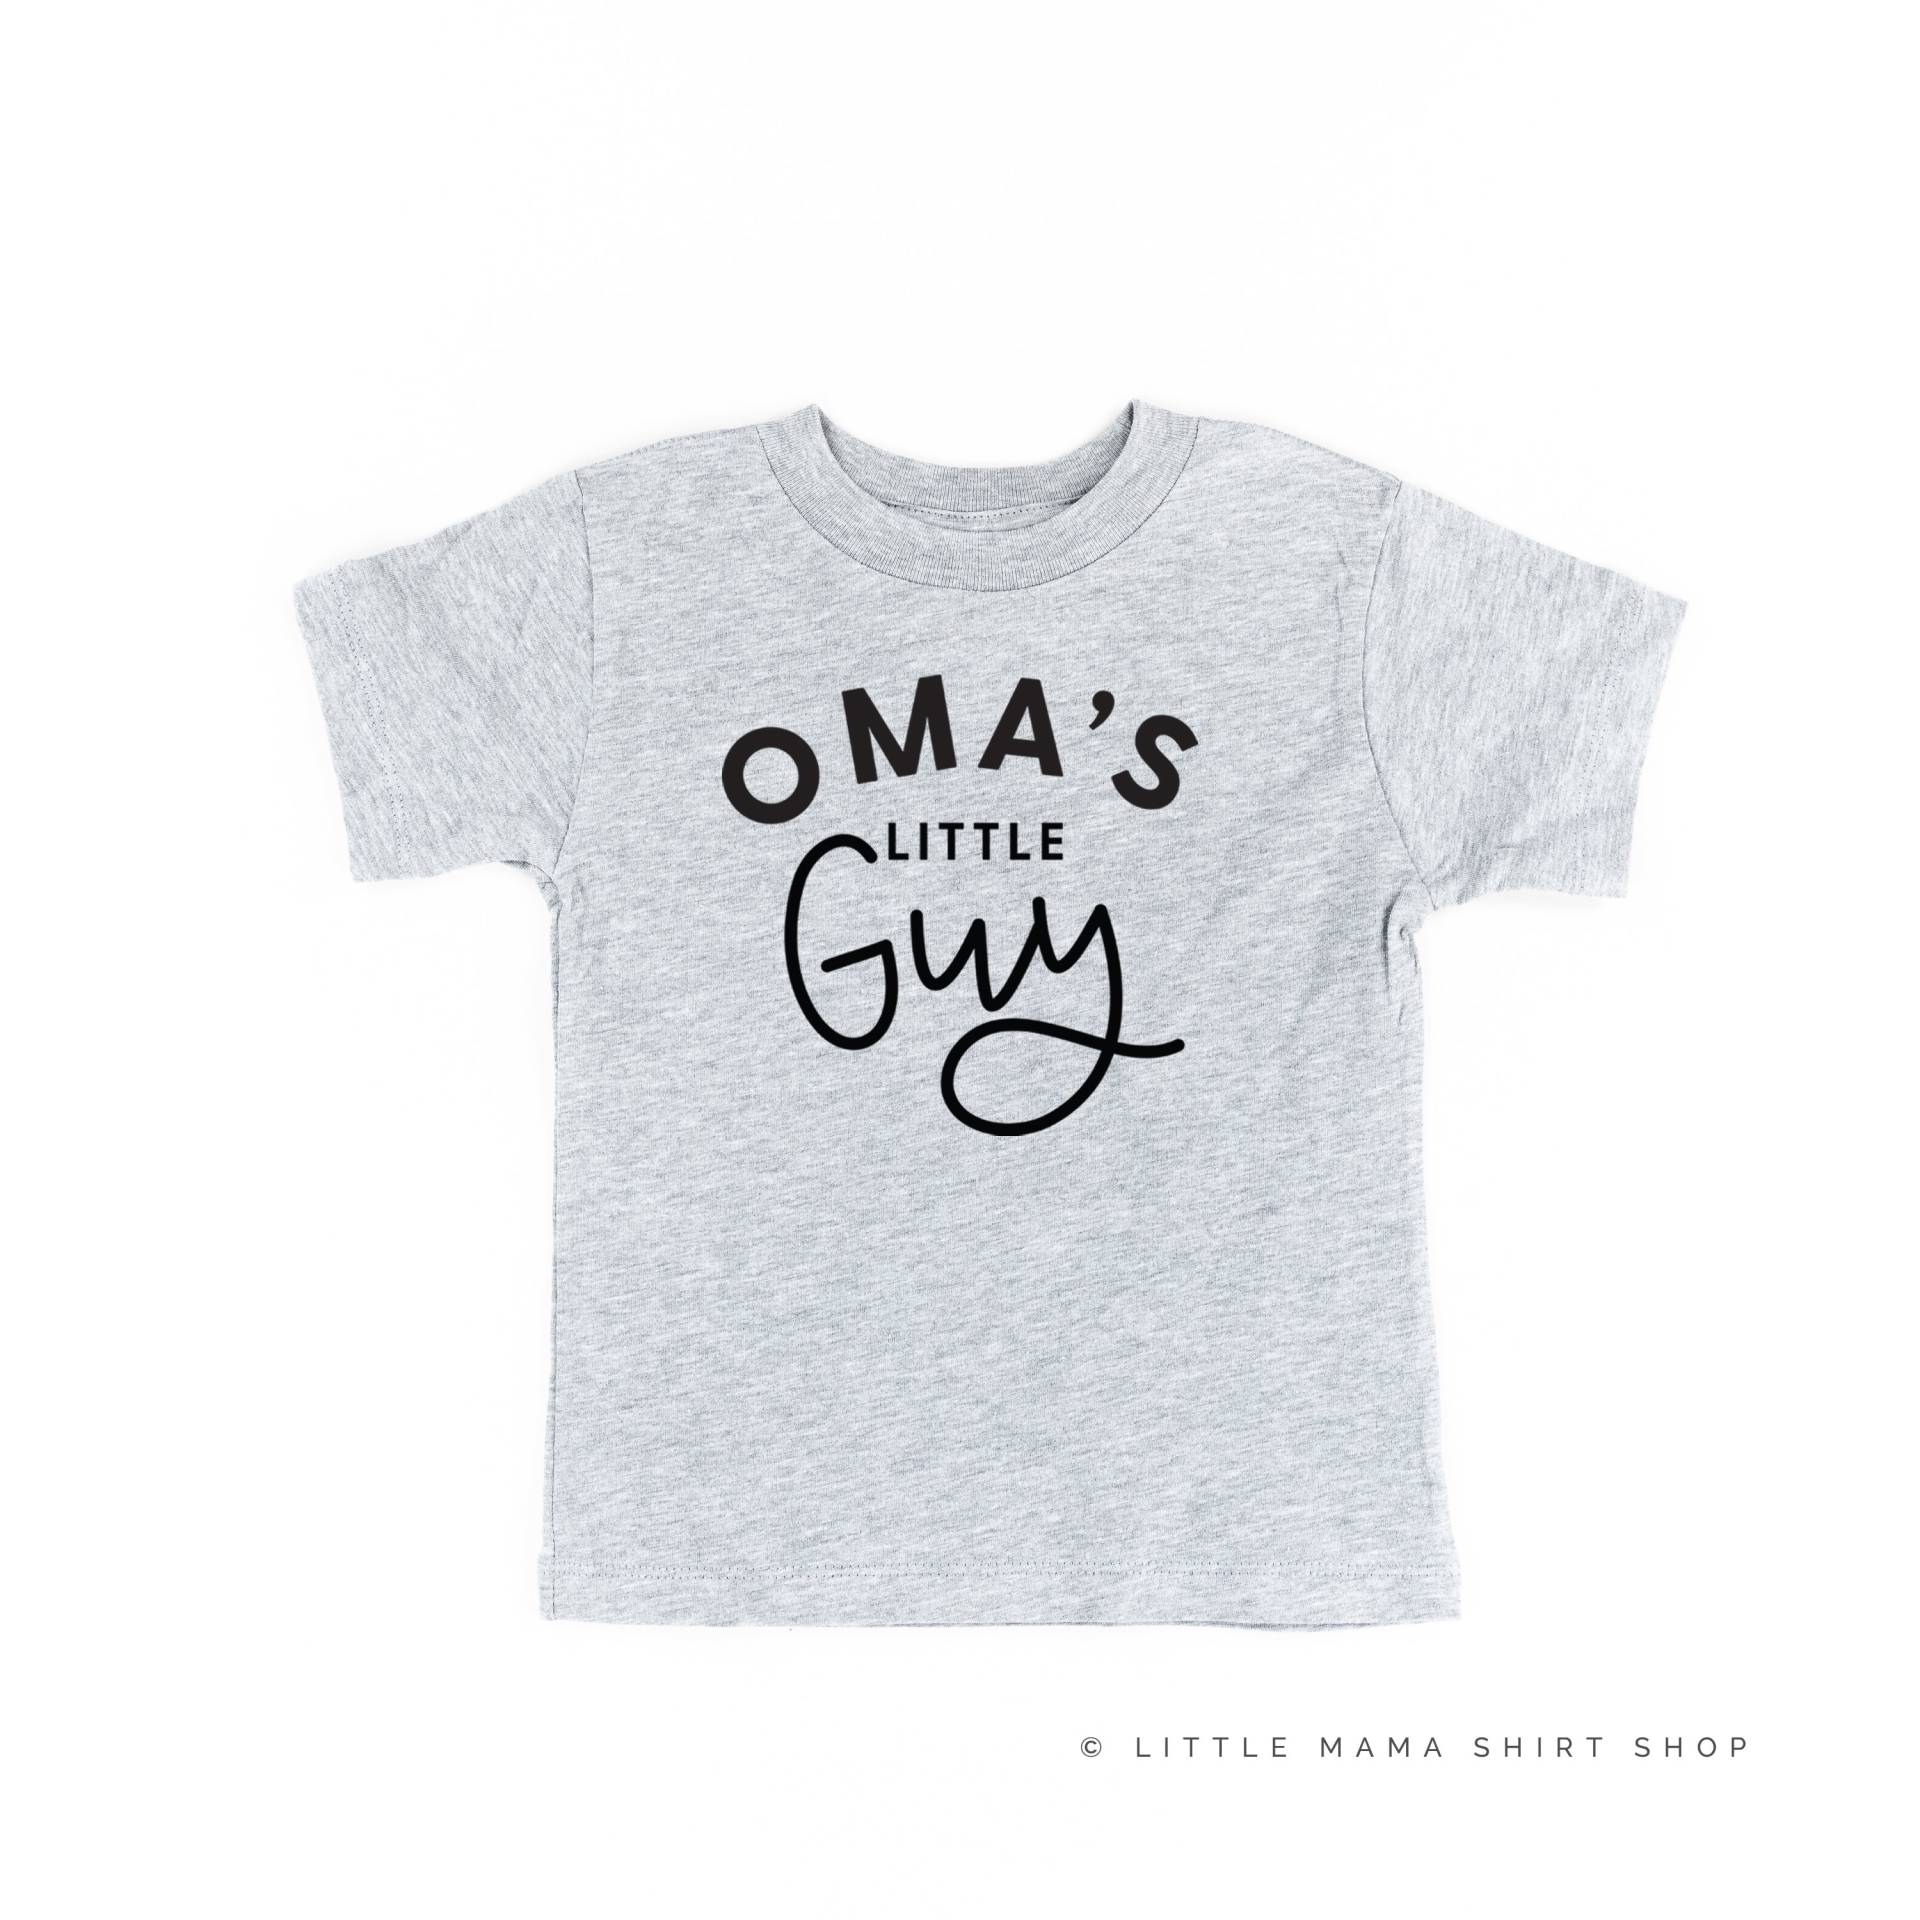 Oma Es Little Guy - Kindershirt | Kleinkind Junge Shirt Shirts Für Kleine Jungs Omas Kerl Baby von LittleMamaShirtShop